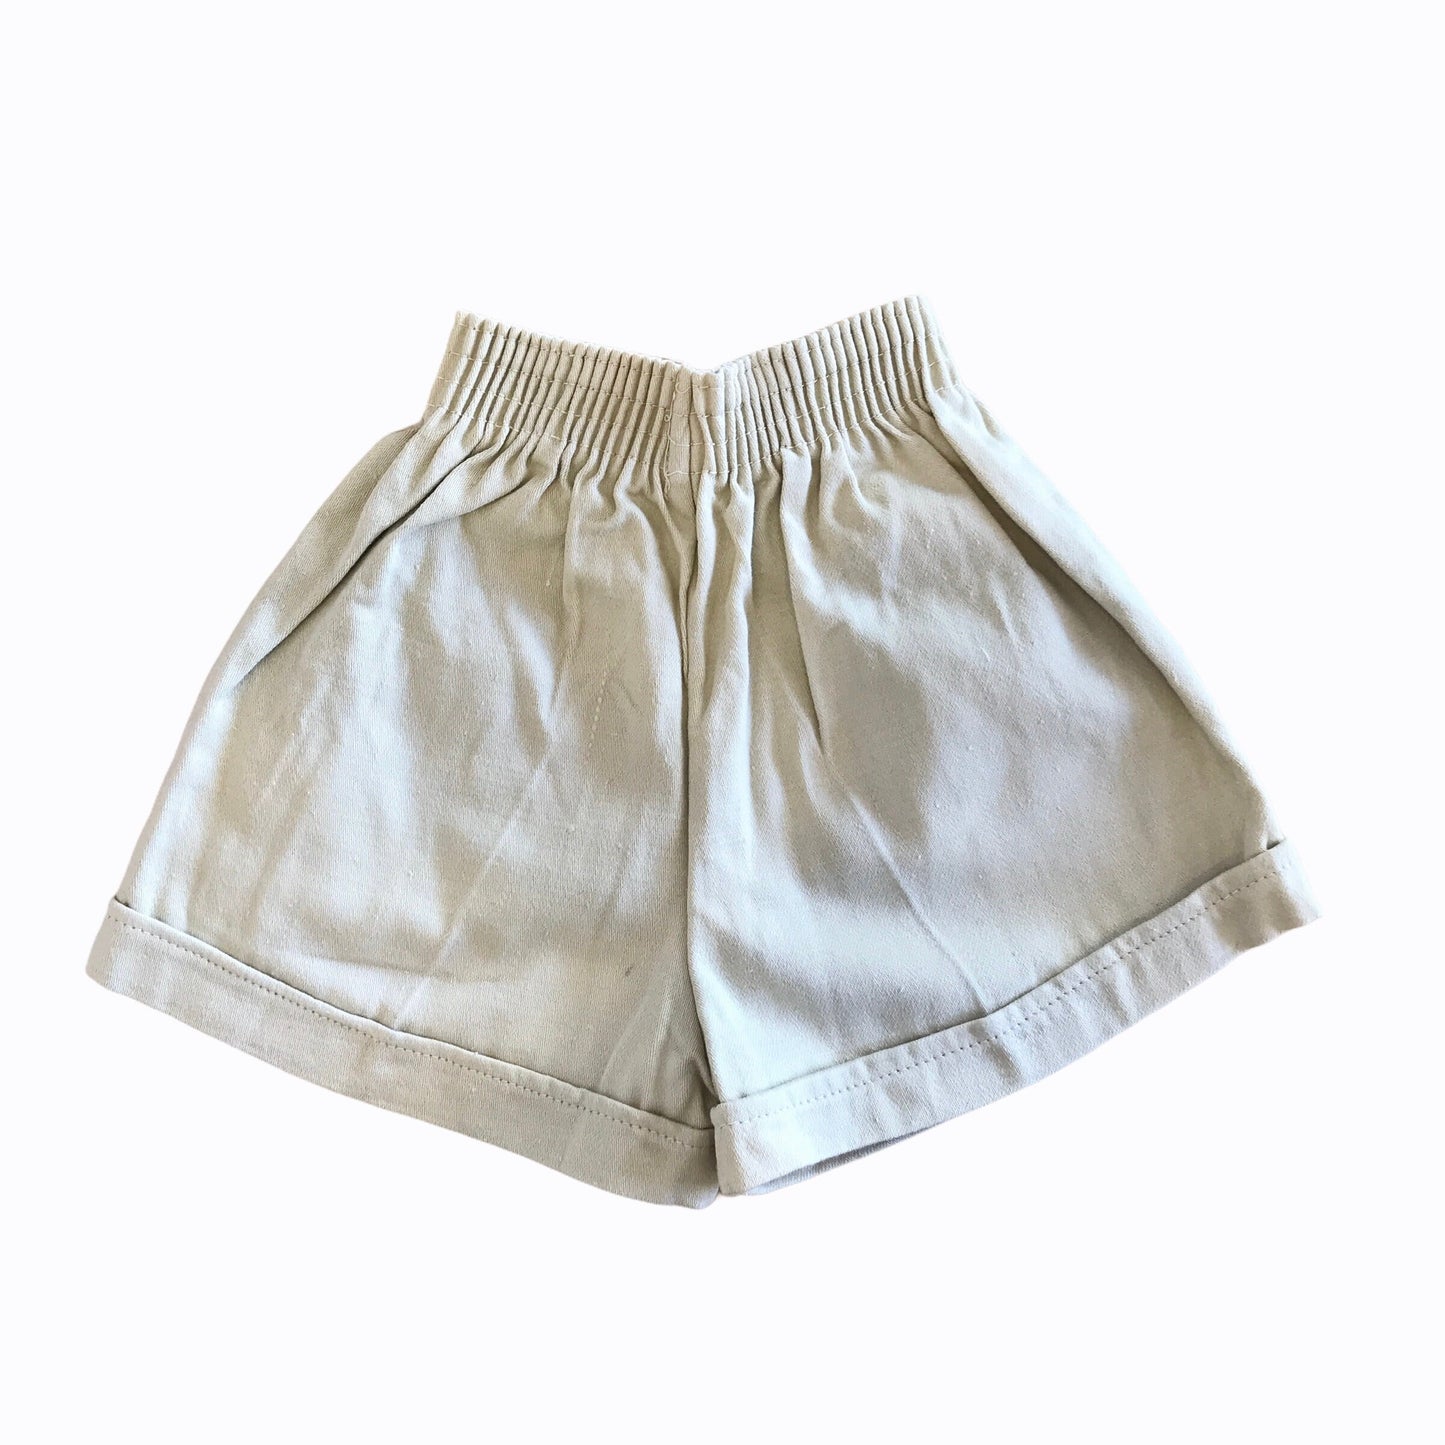 Vintage 1960s Beige Cotton Shorts British Made 18-24M